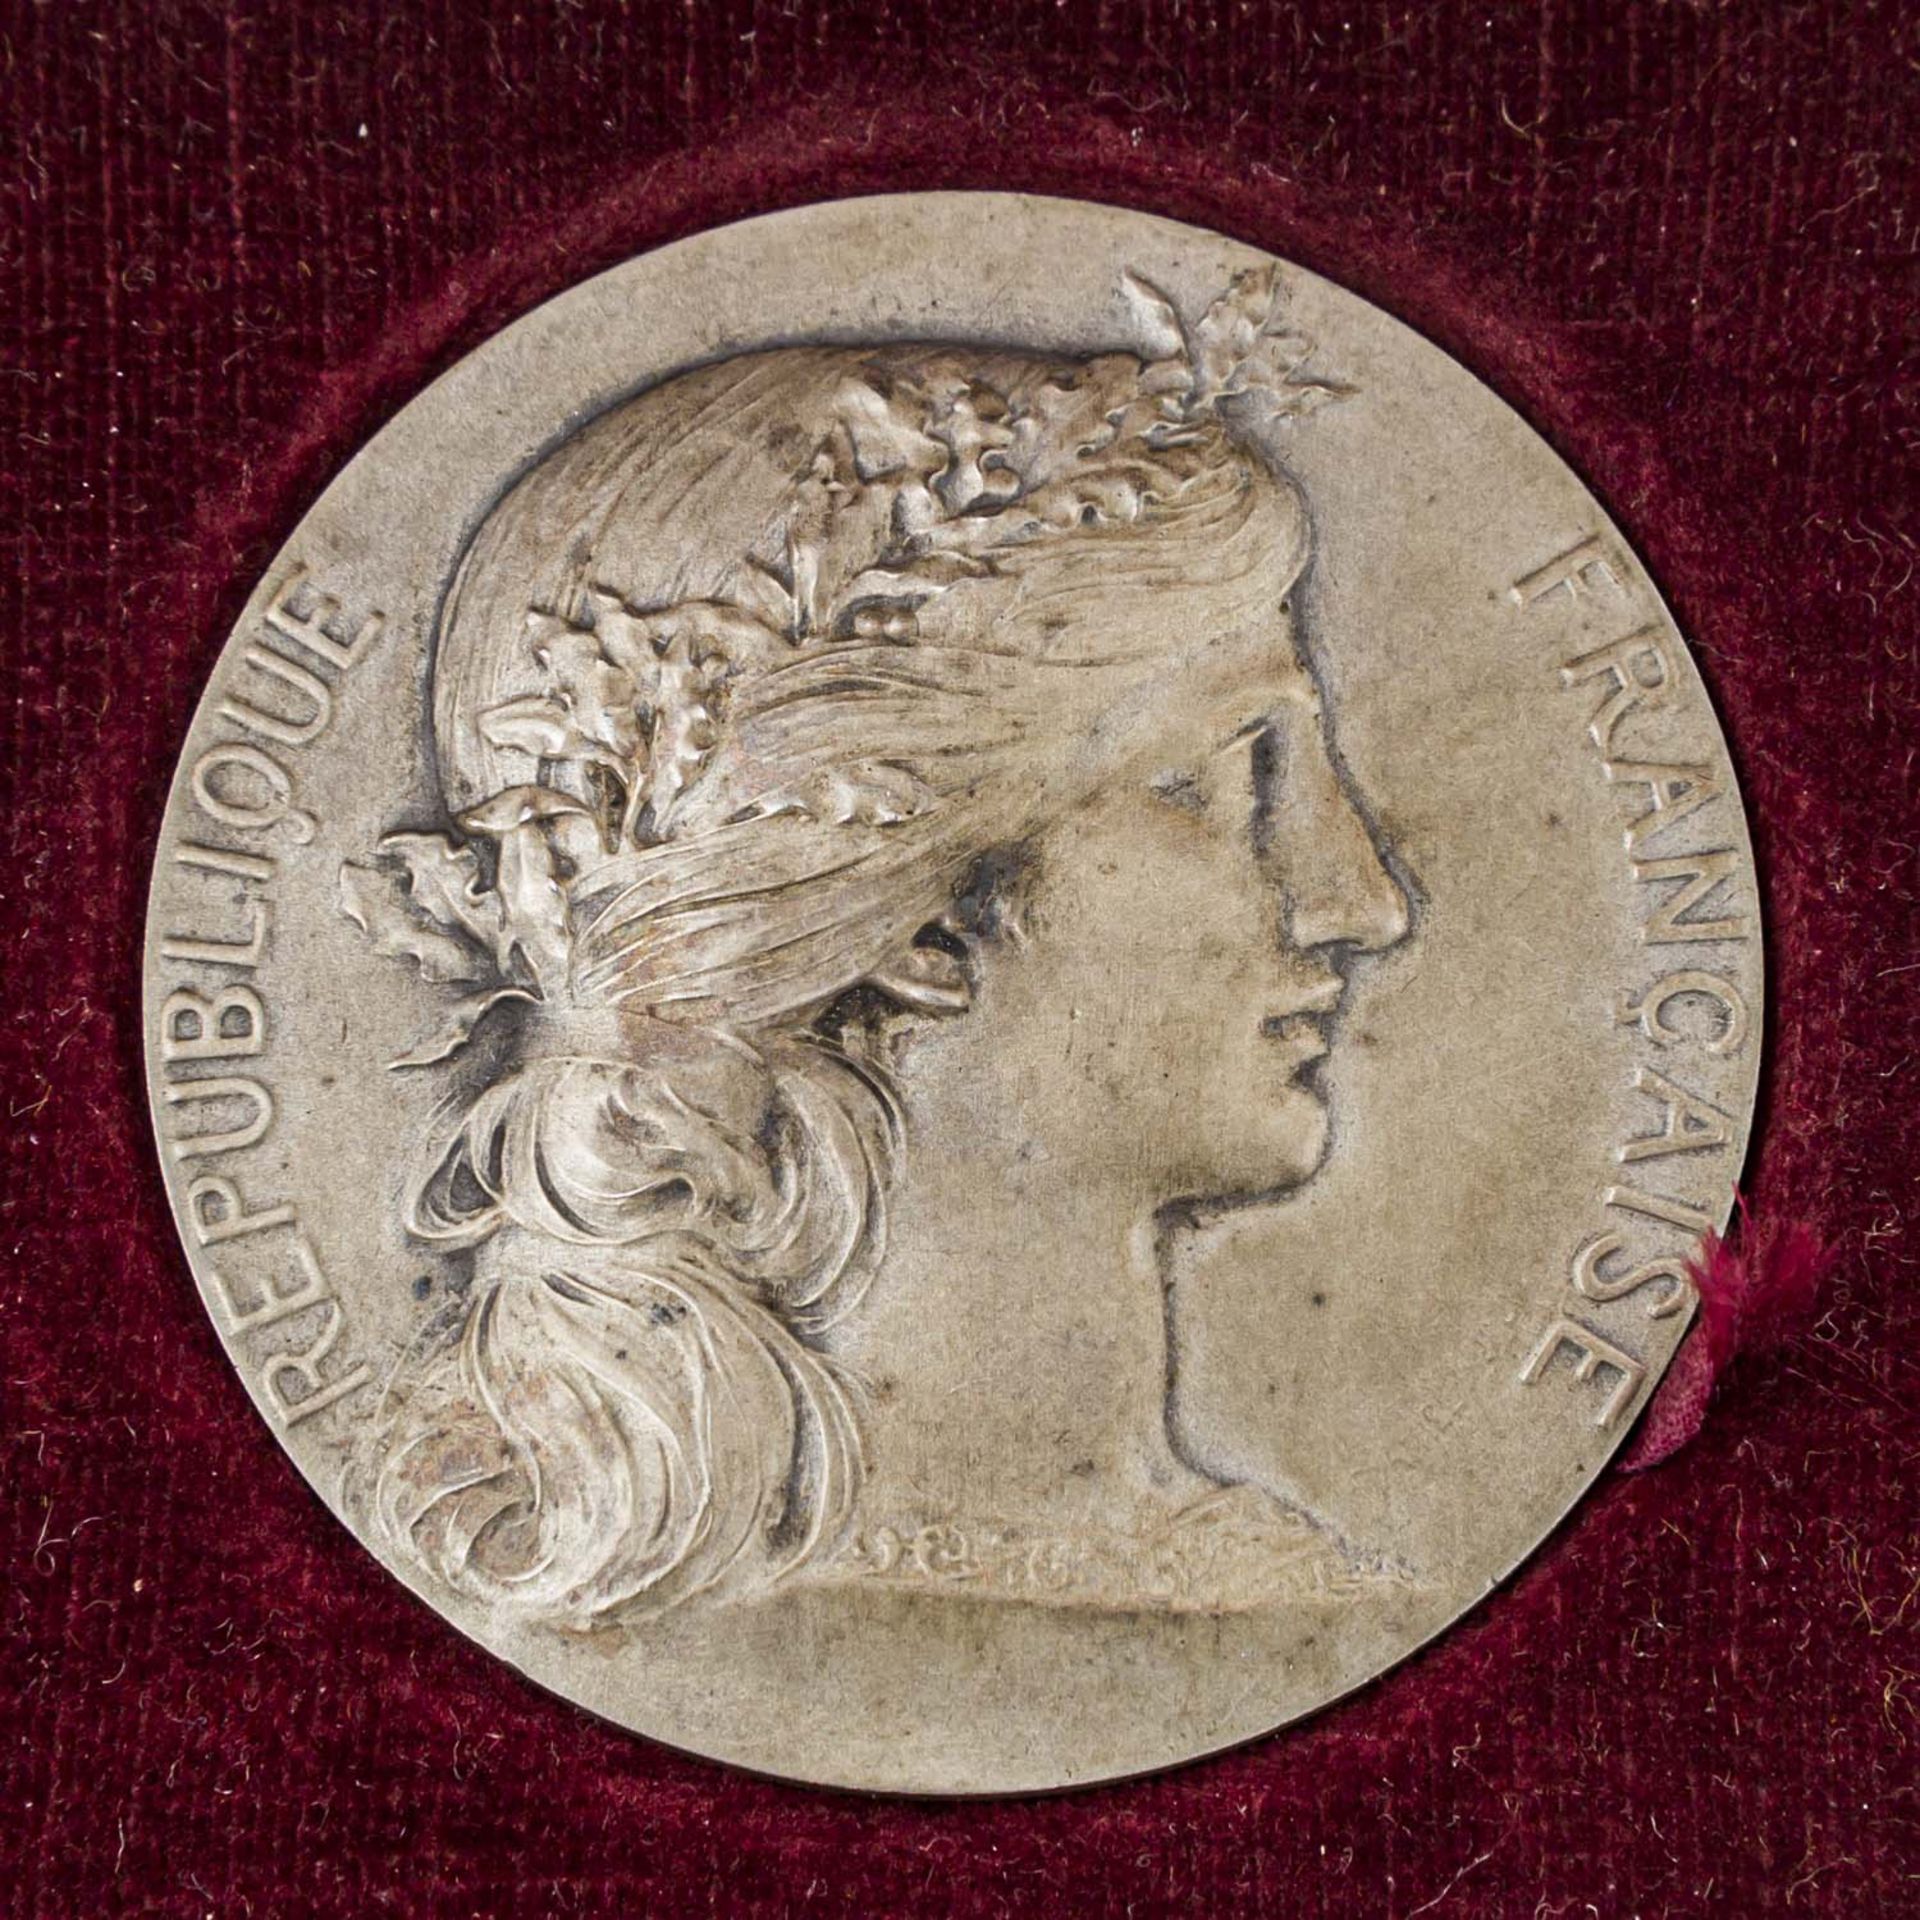 2 Preismedaillen, III. Französische Republik (1870-1940) -1 x Frankreich - Preismedaille o.J., - Bild 4 aus 5